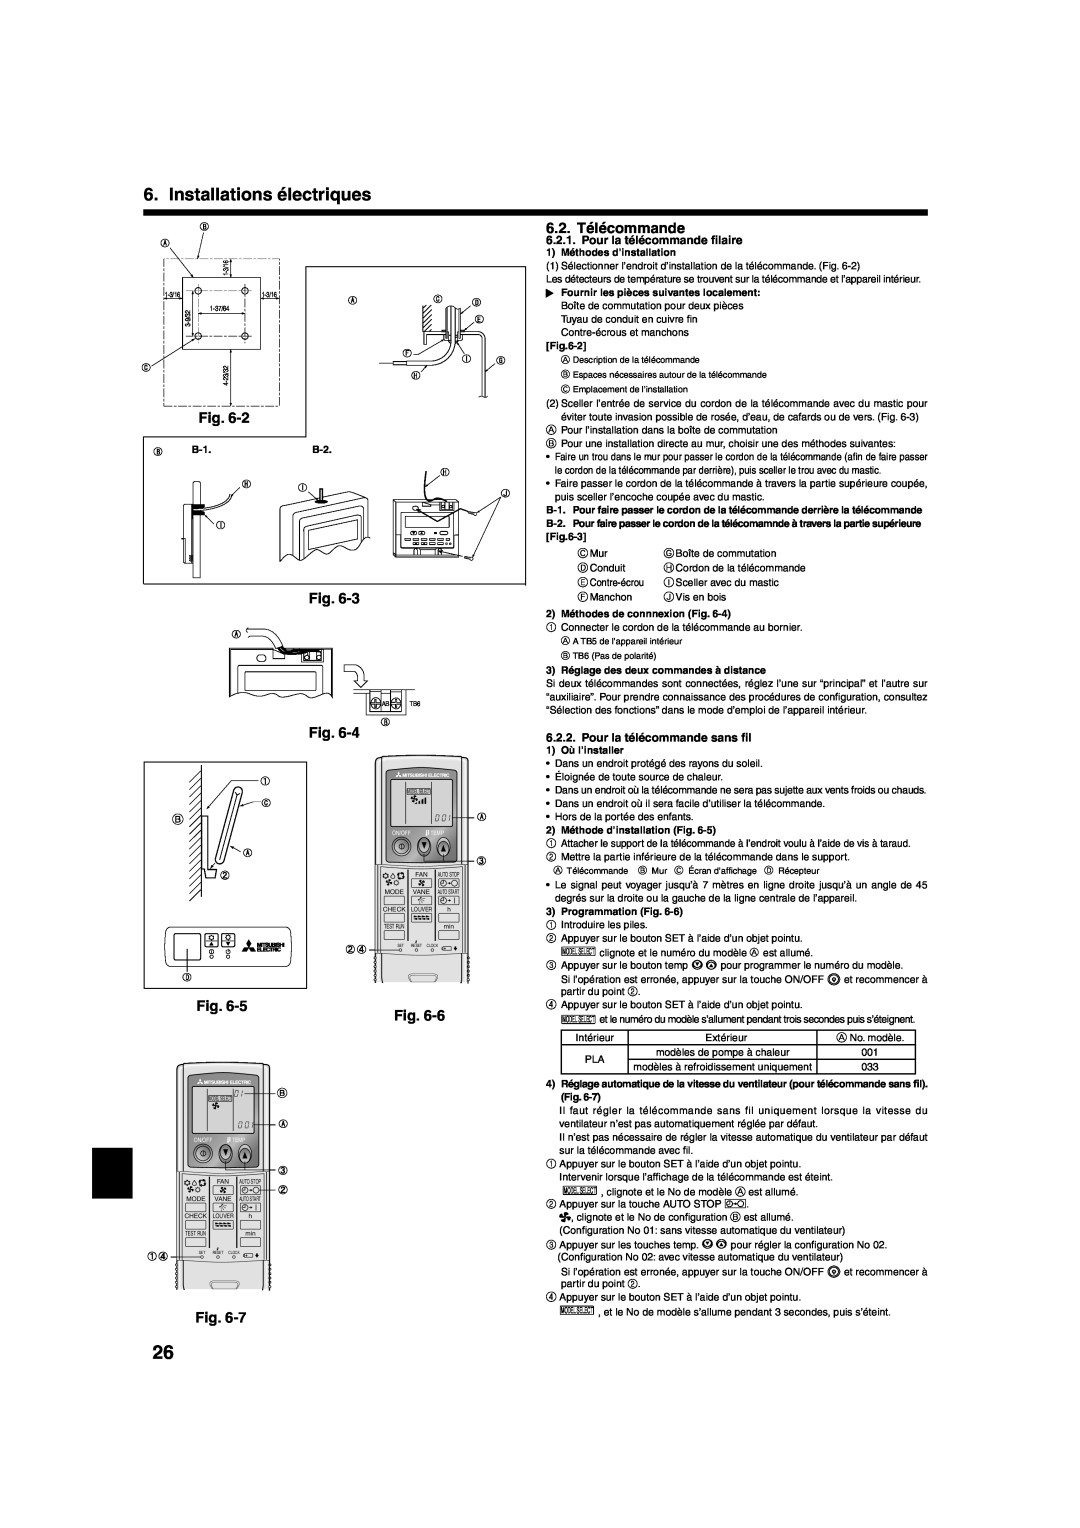 Mitsumi electronic PLA-ABA installation manual Installations électriques, 6.2. Télécommande, Pour la télécommande ﬁlaire 